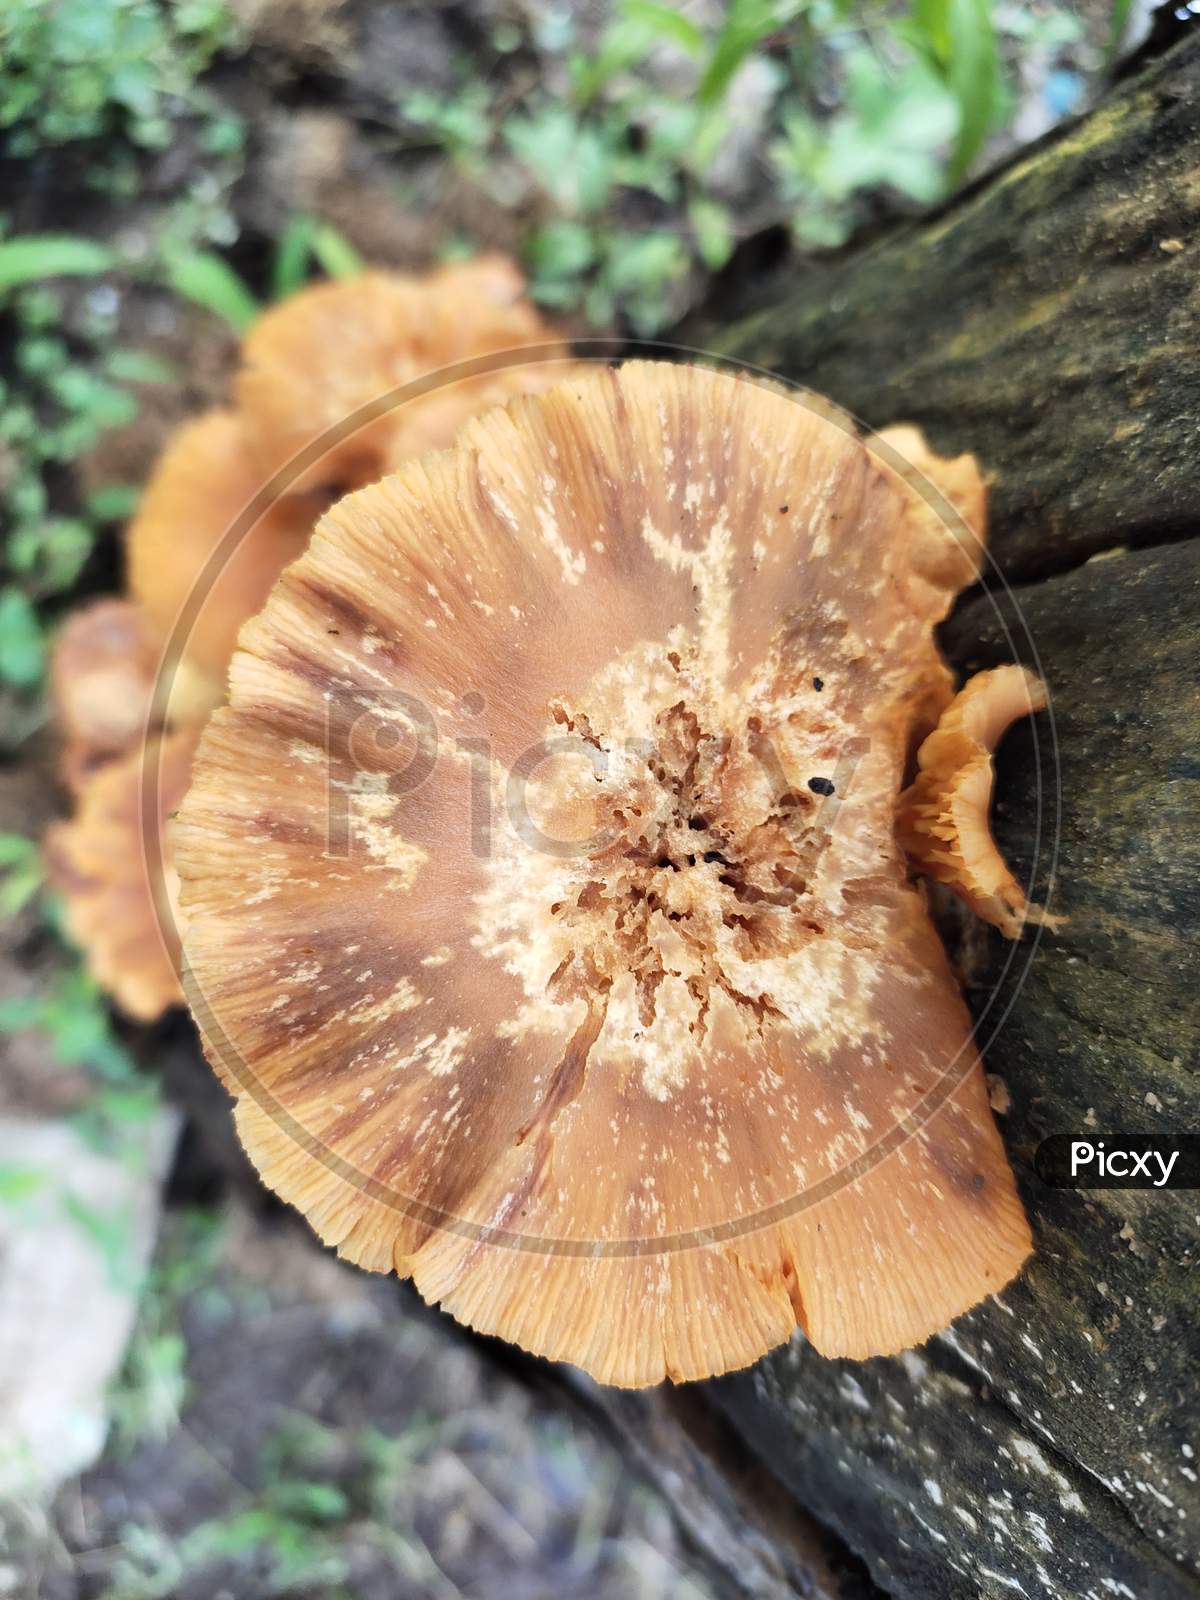 The mushroom plant on a tree